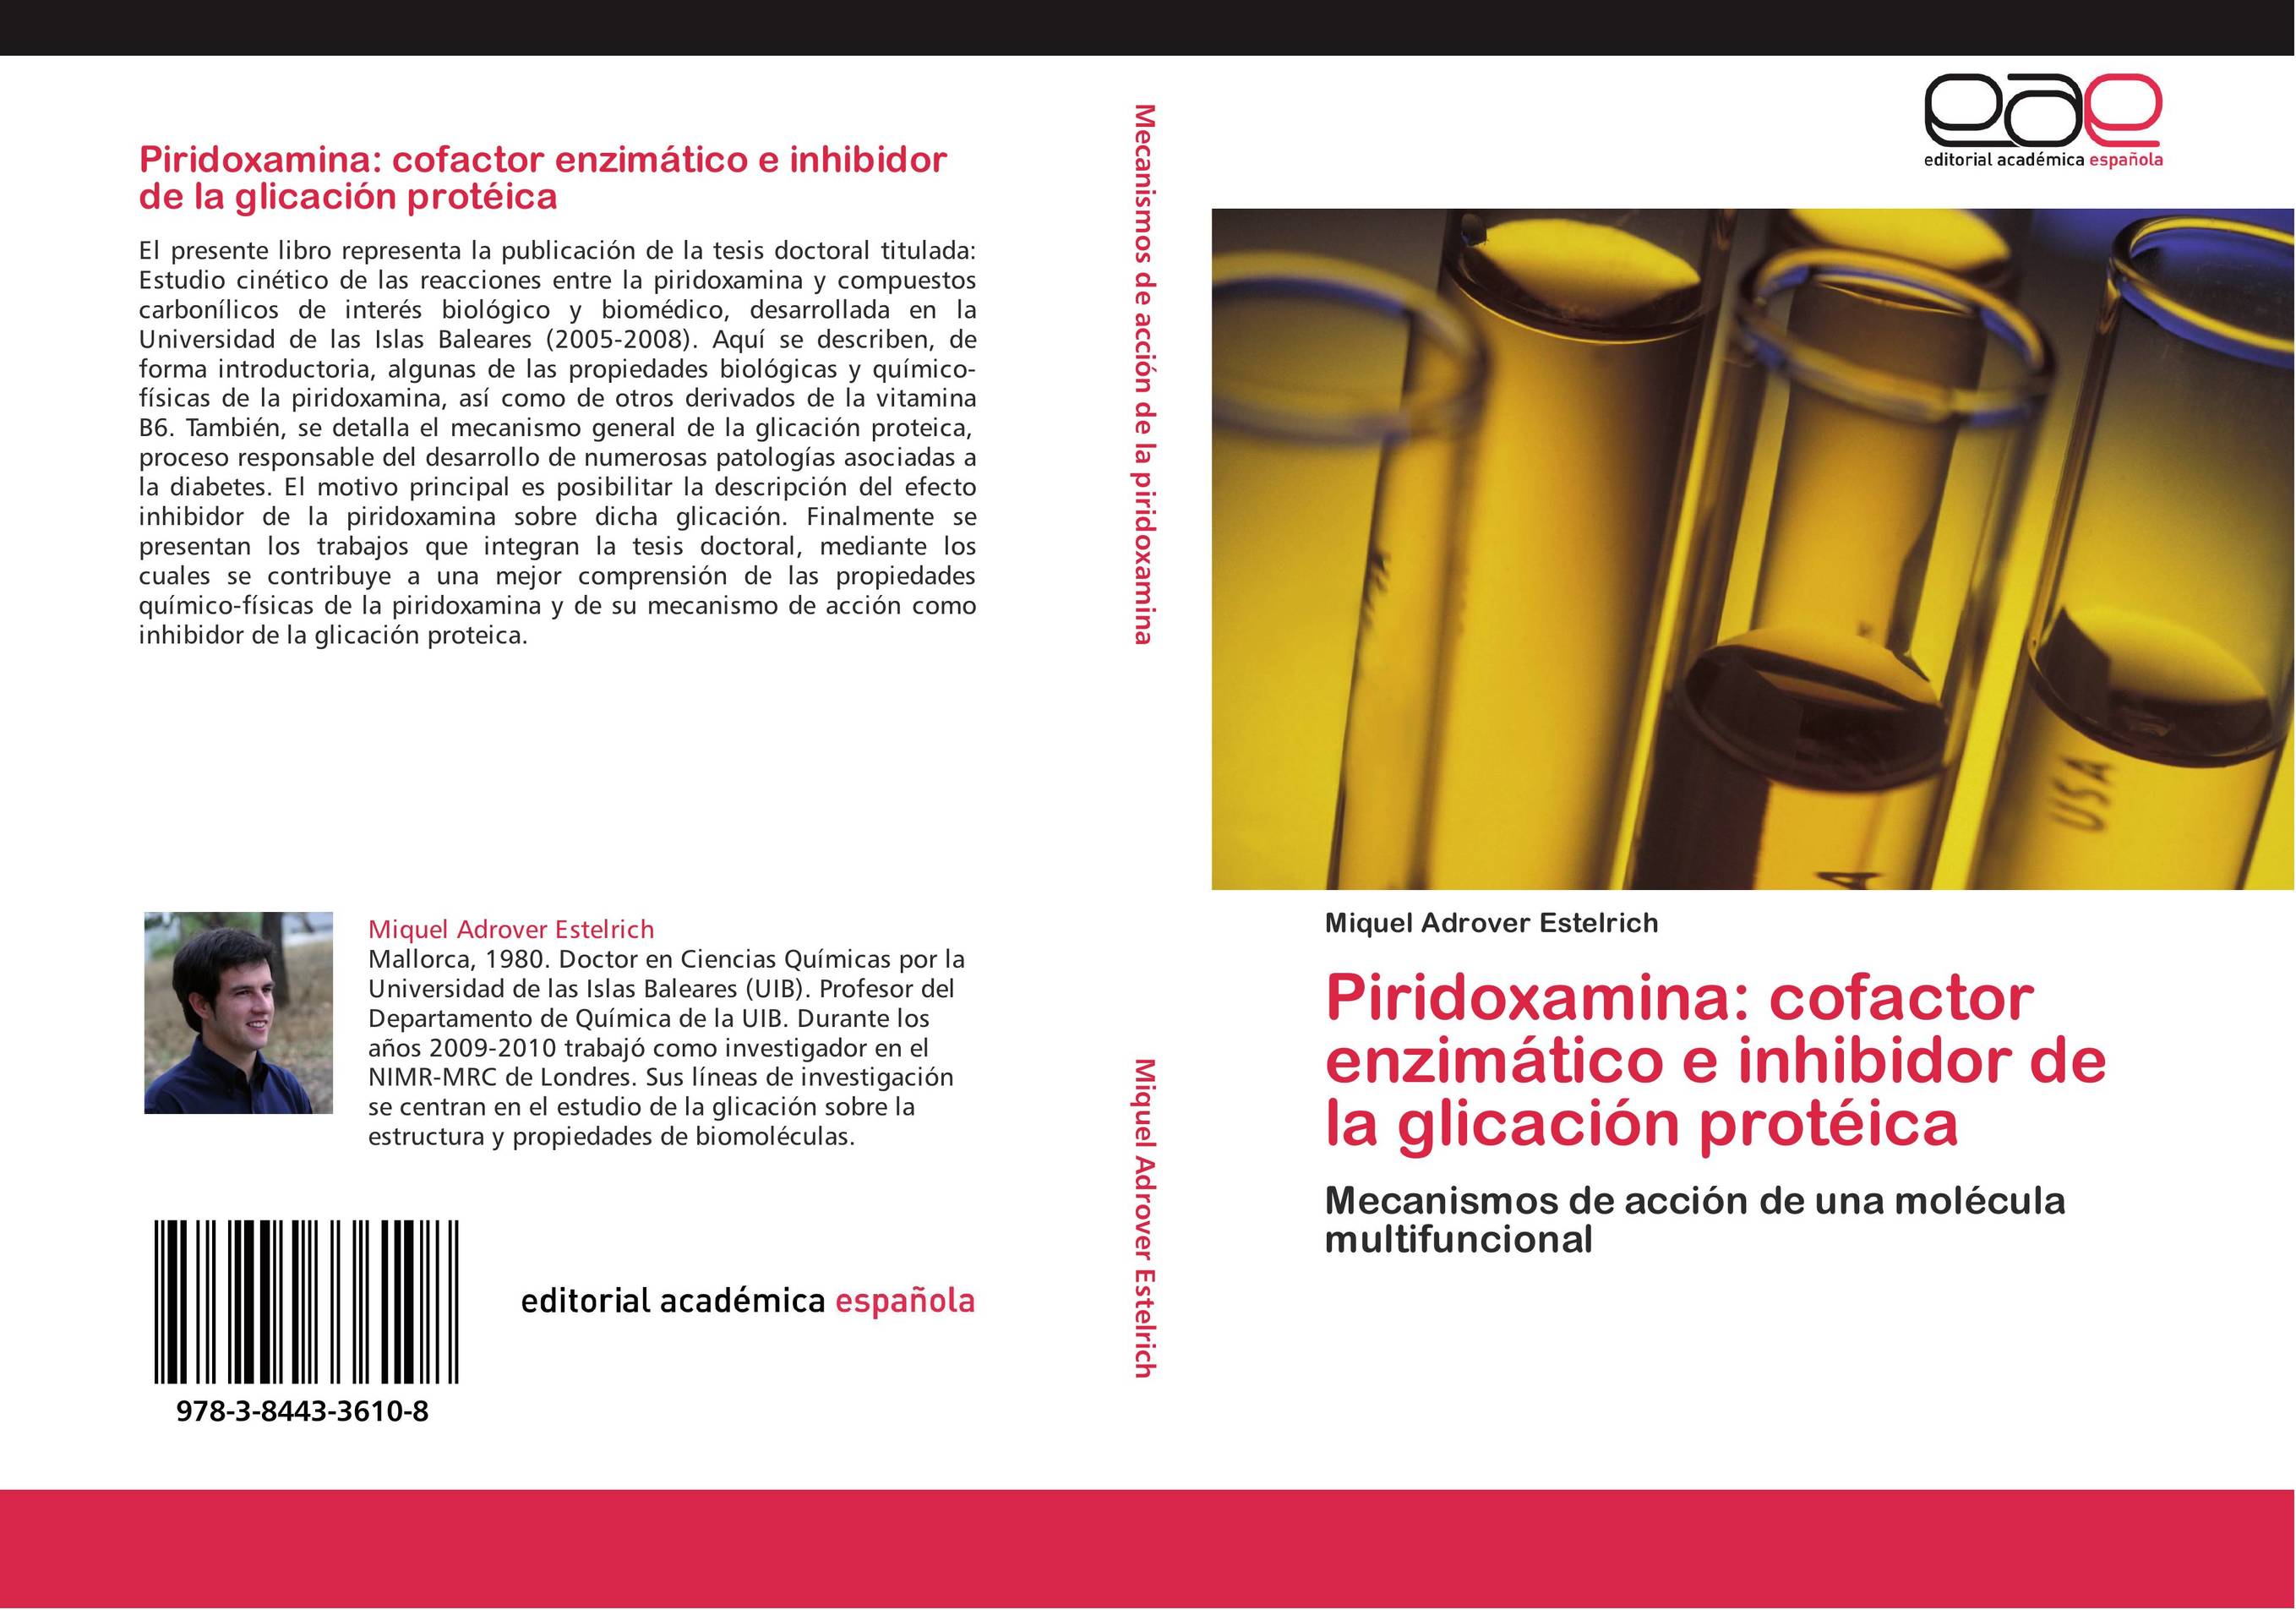 Piridoxamina: cofactor enzimático e inhibidor de la glicación protéica